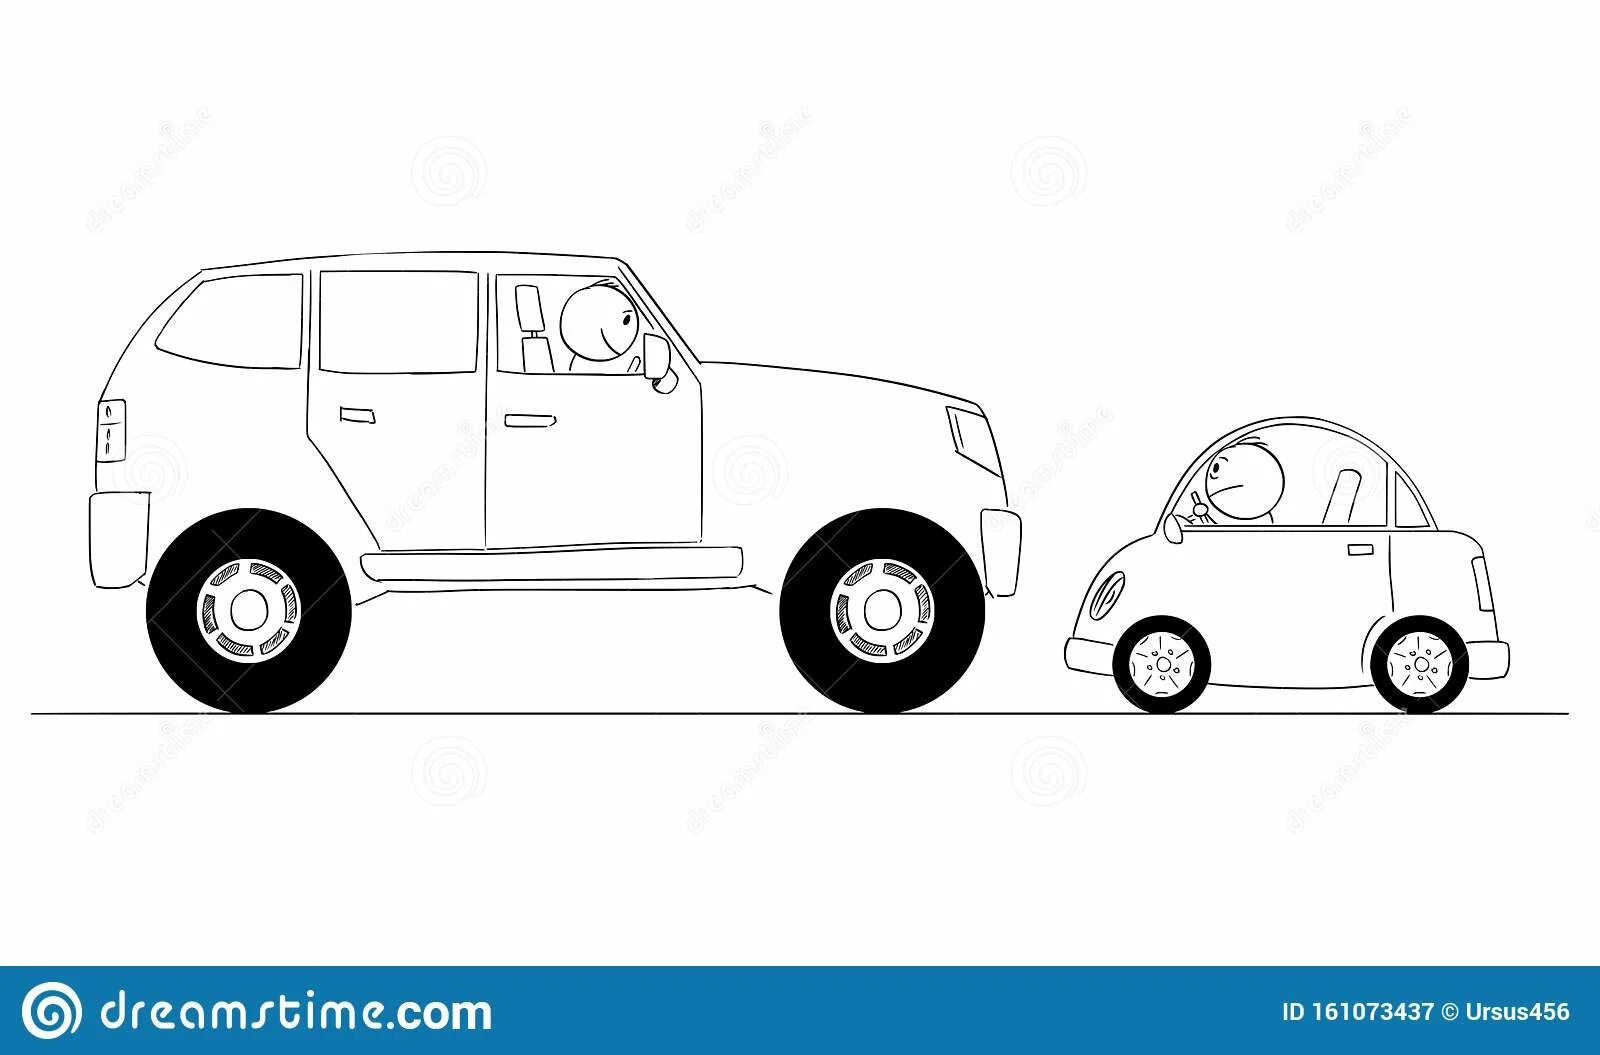 Машина рисунок для детей. Big and small cars. ETK 900 big and small cars. Сидячая машина рисунок.